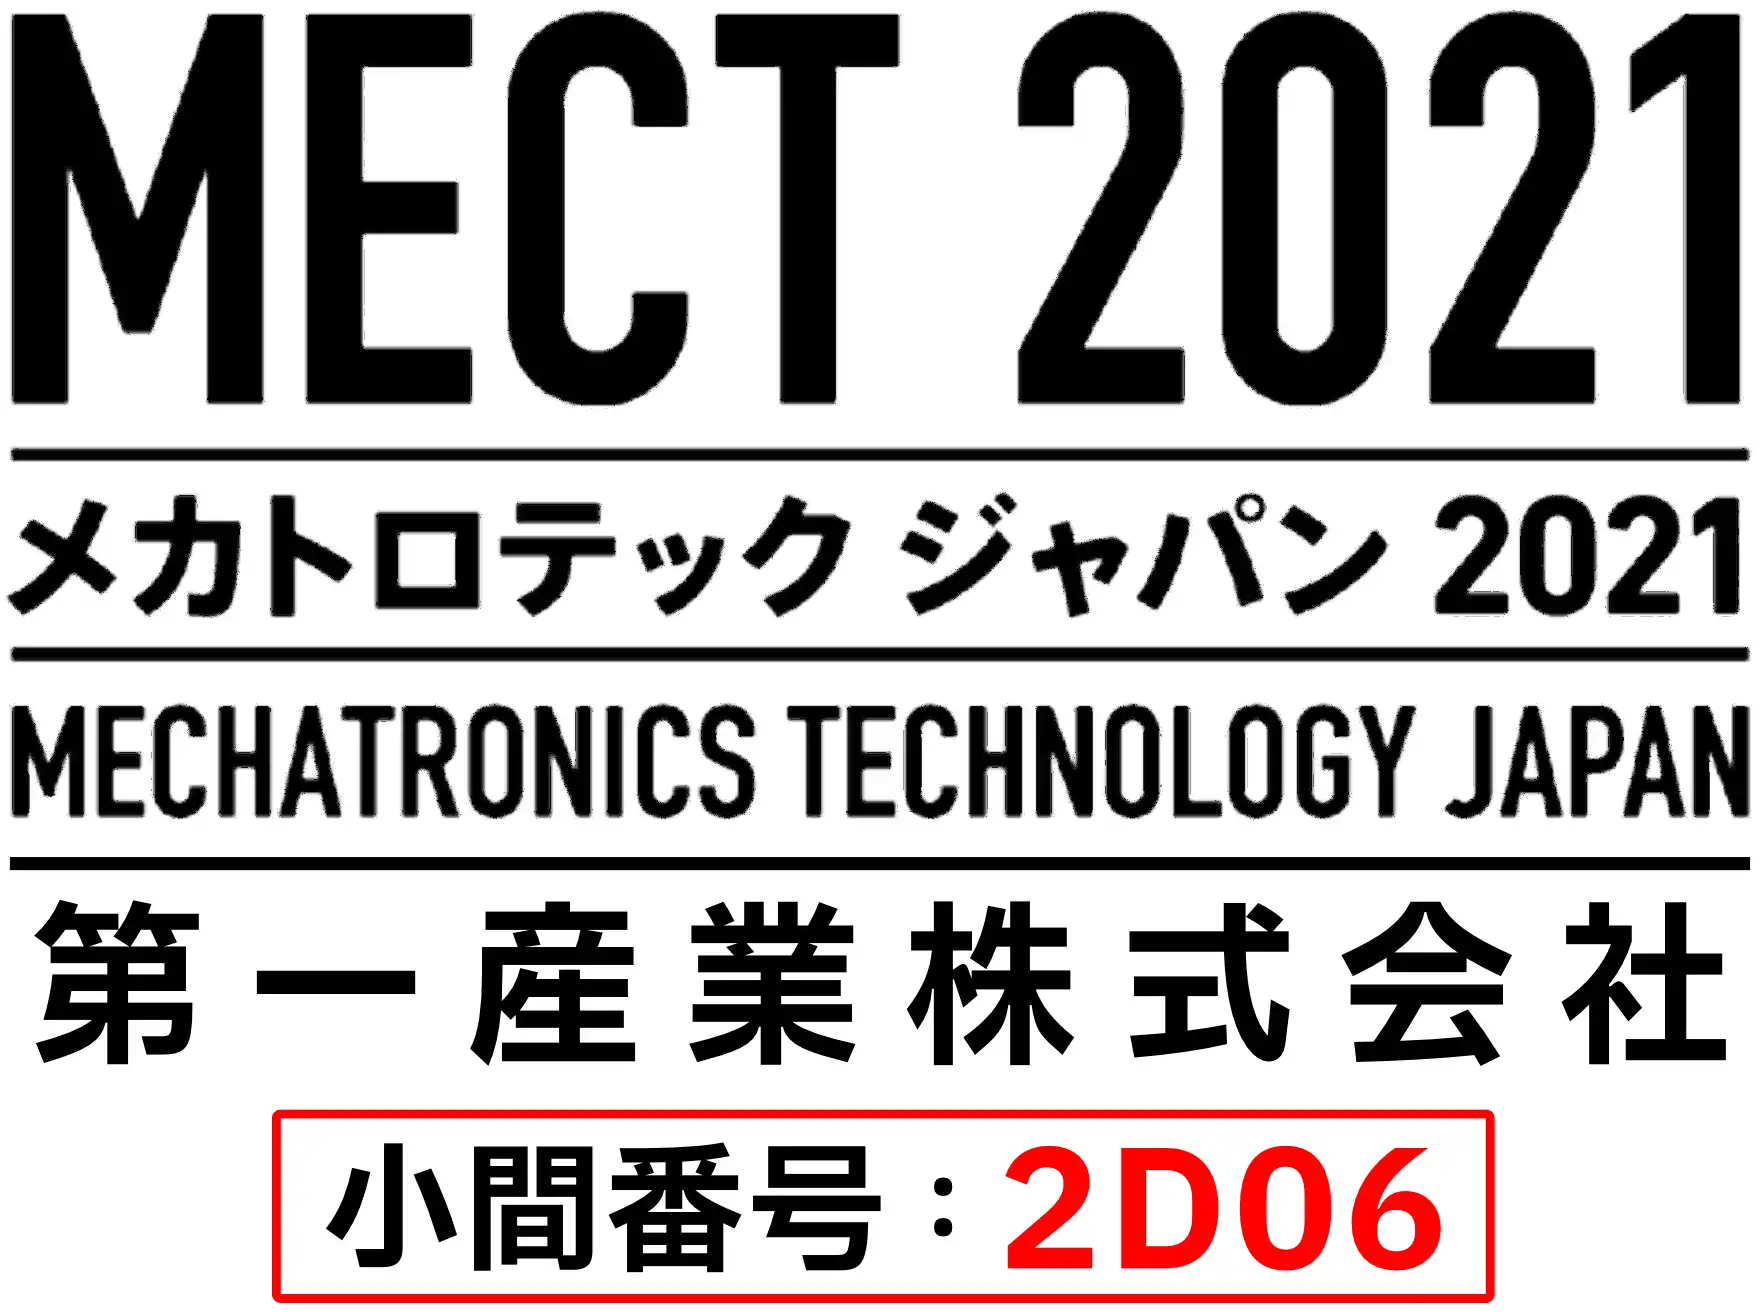 MECT 2021 メカトロテックジャパン2021 MECHATRONICS TECHNOLOGY JAPAN 第一産業株式会社 小間番号